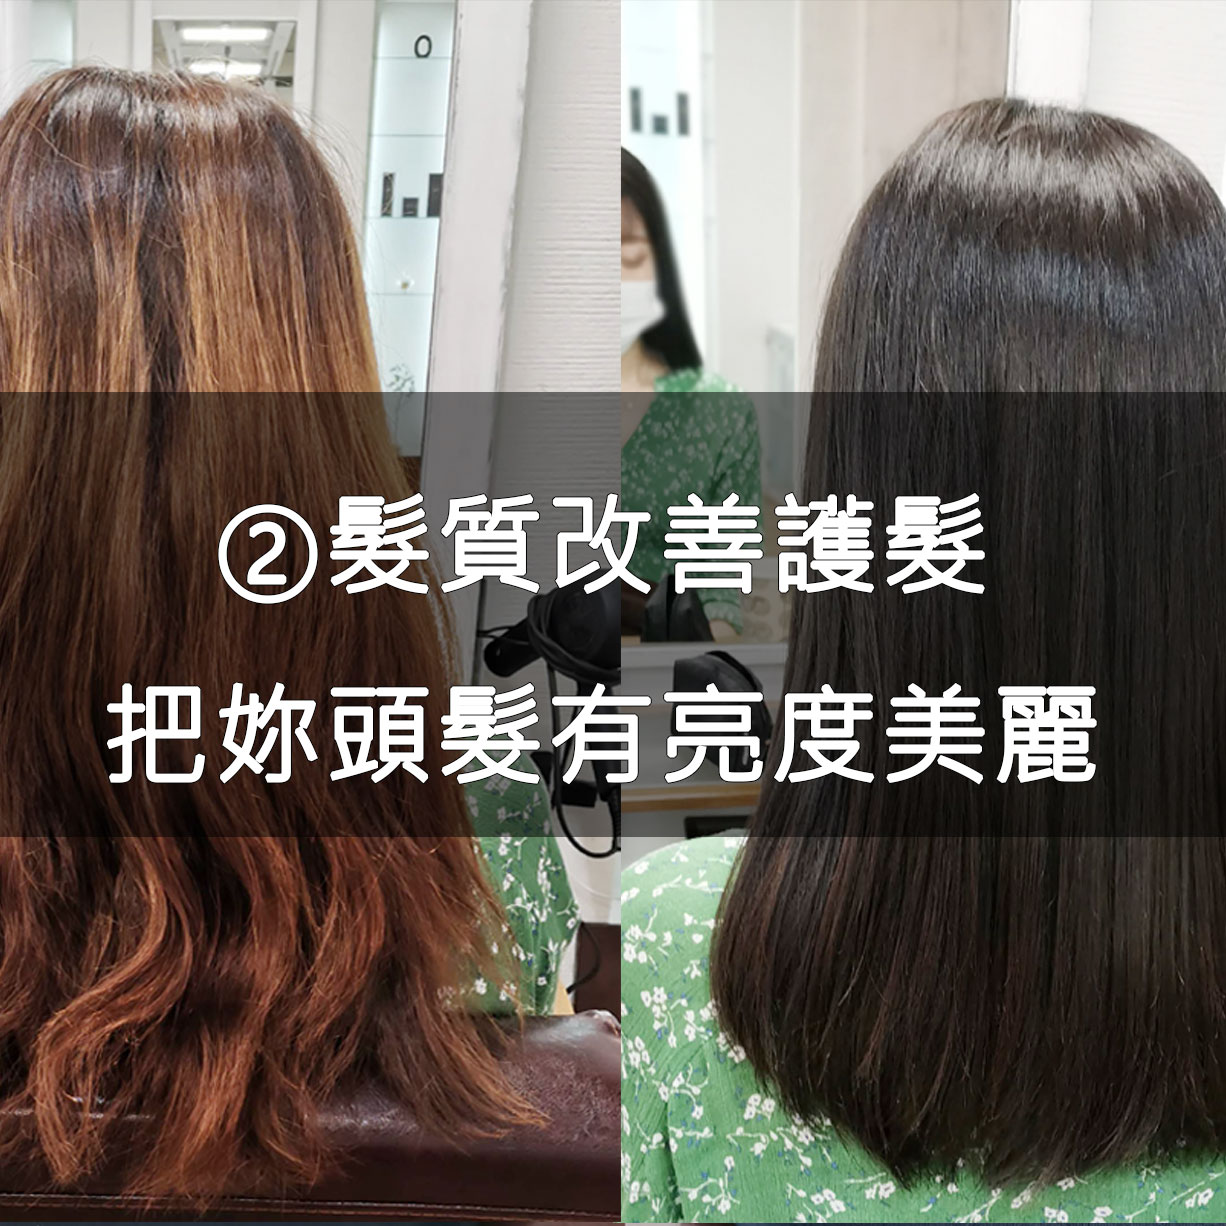 台北松山區日本美髮髮廊的髮質改善護髮